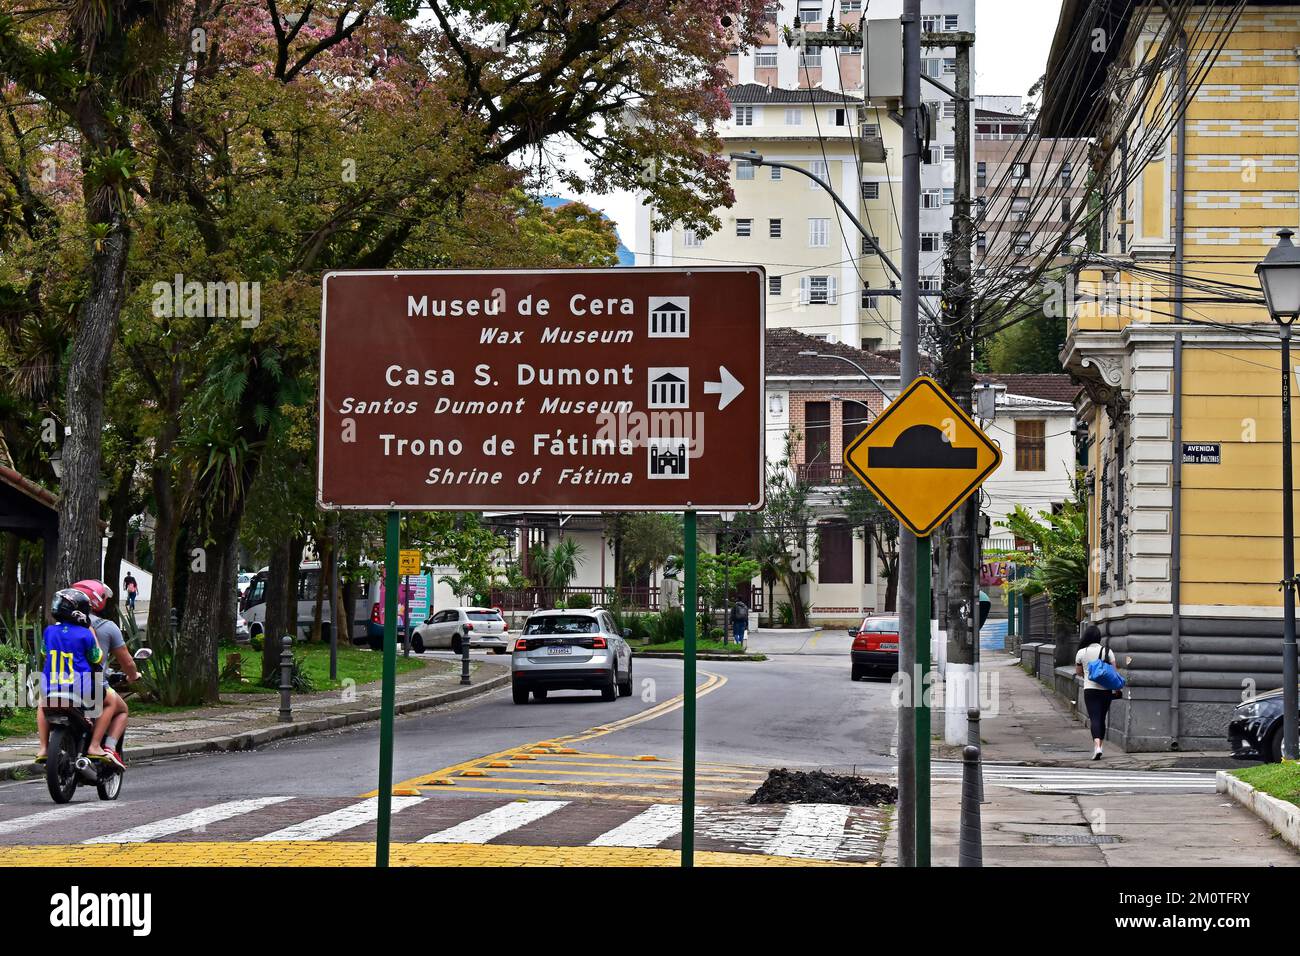 PETRÓPOLIS, RÍO DE JANEIRO, BRASIL - 28 de octubre de 2022: Señal de la calle que indica la dirección de las atracciones turísticas Foto de stock